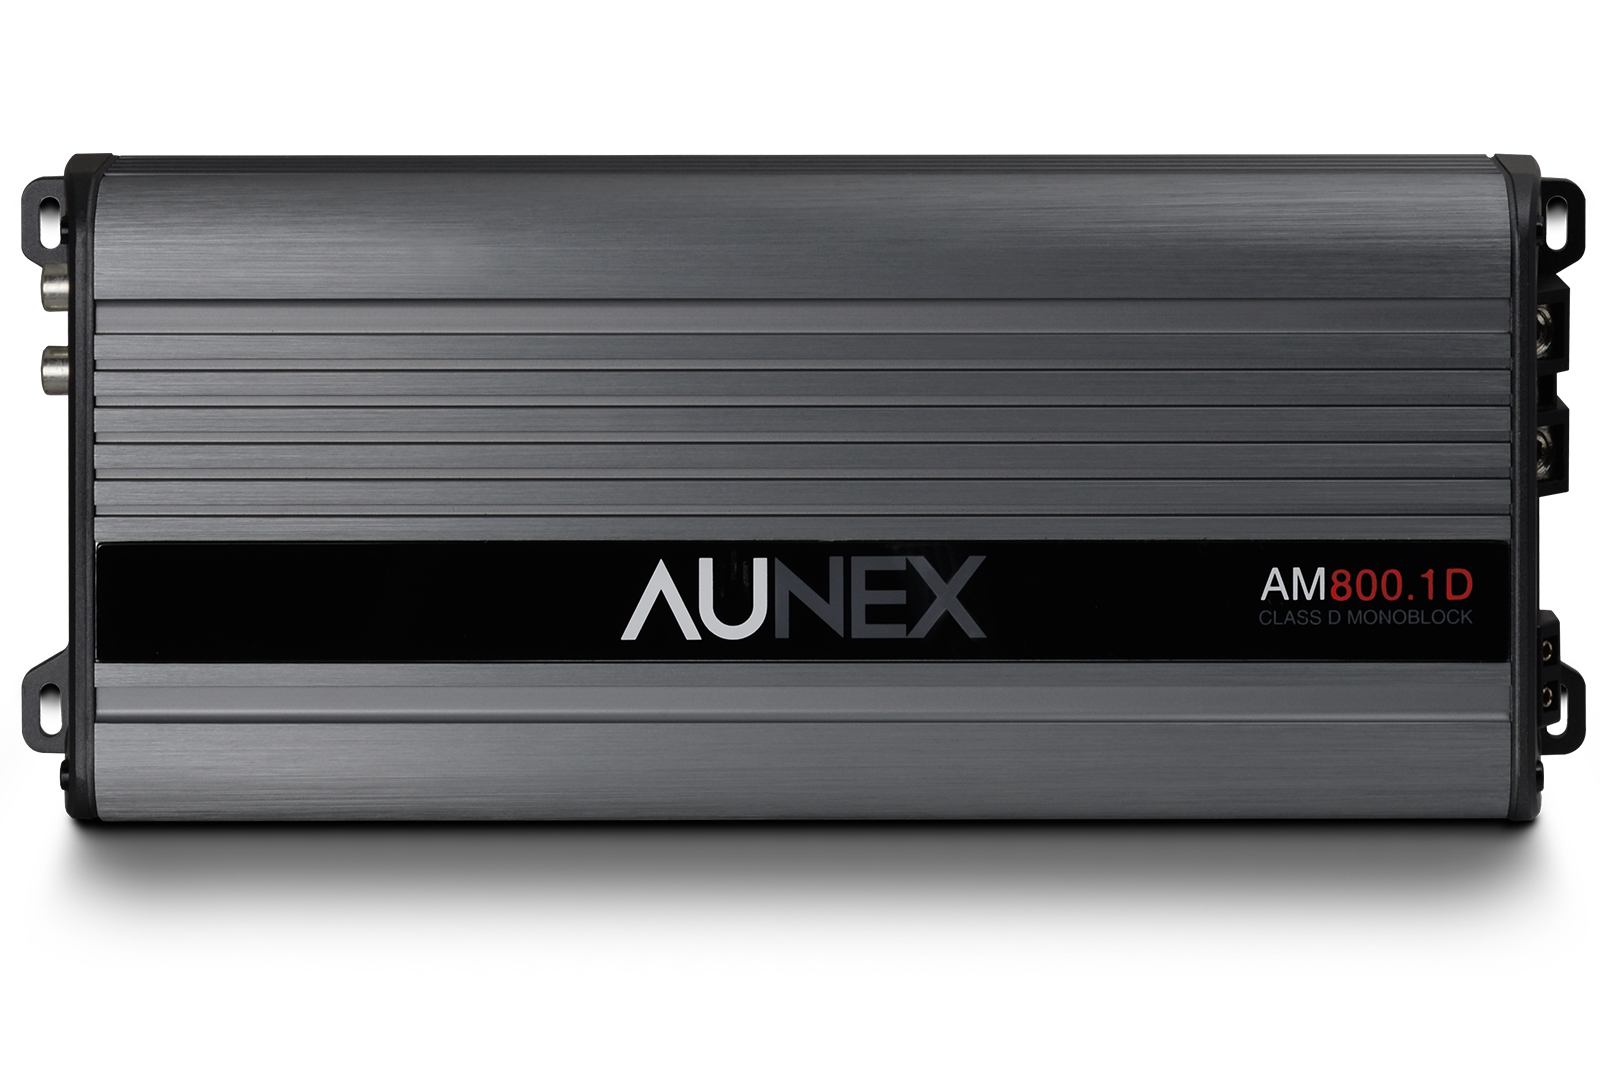 Aunex AM 800 1D Front pasmag